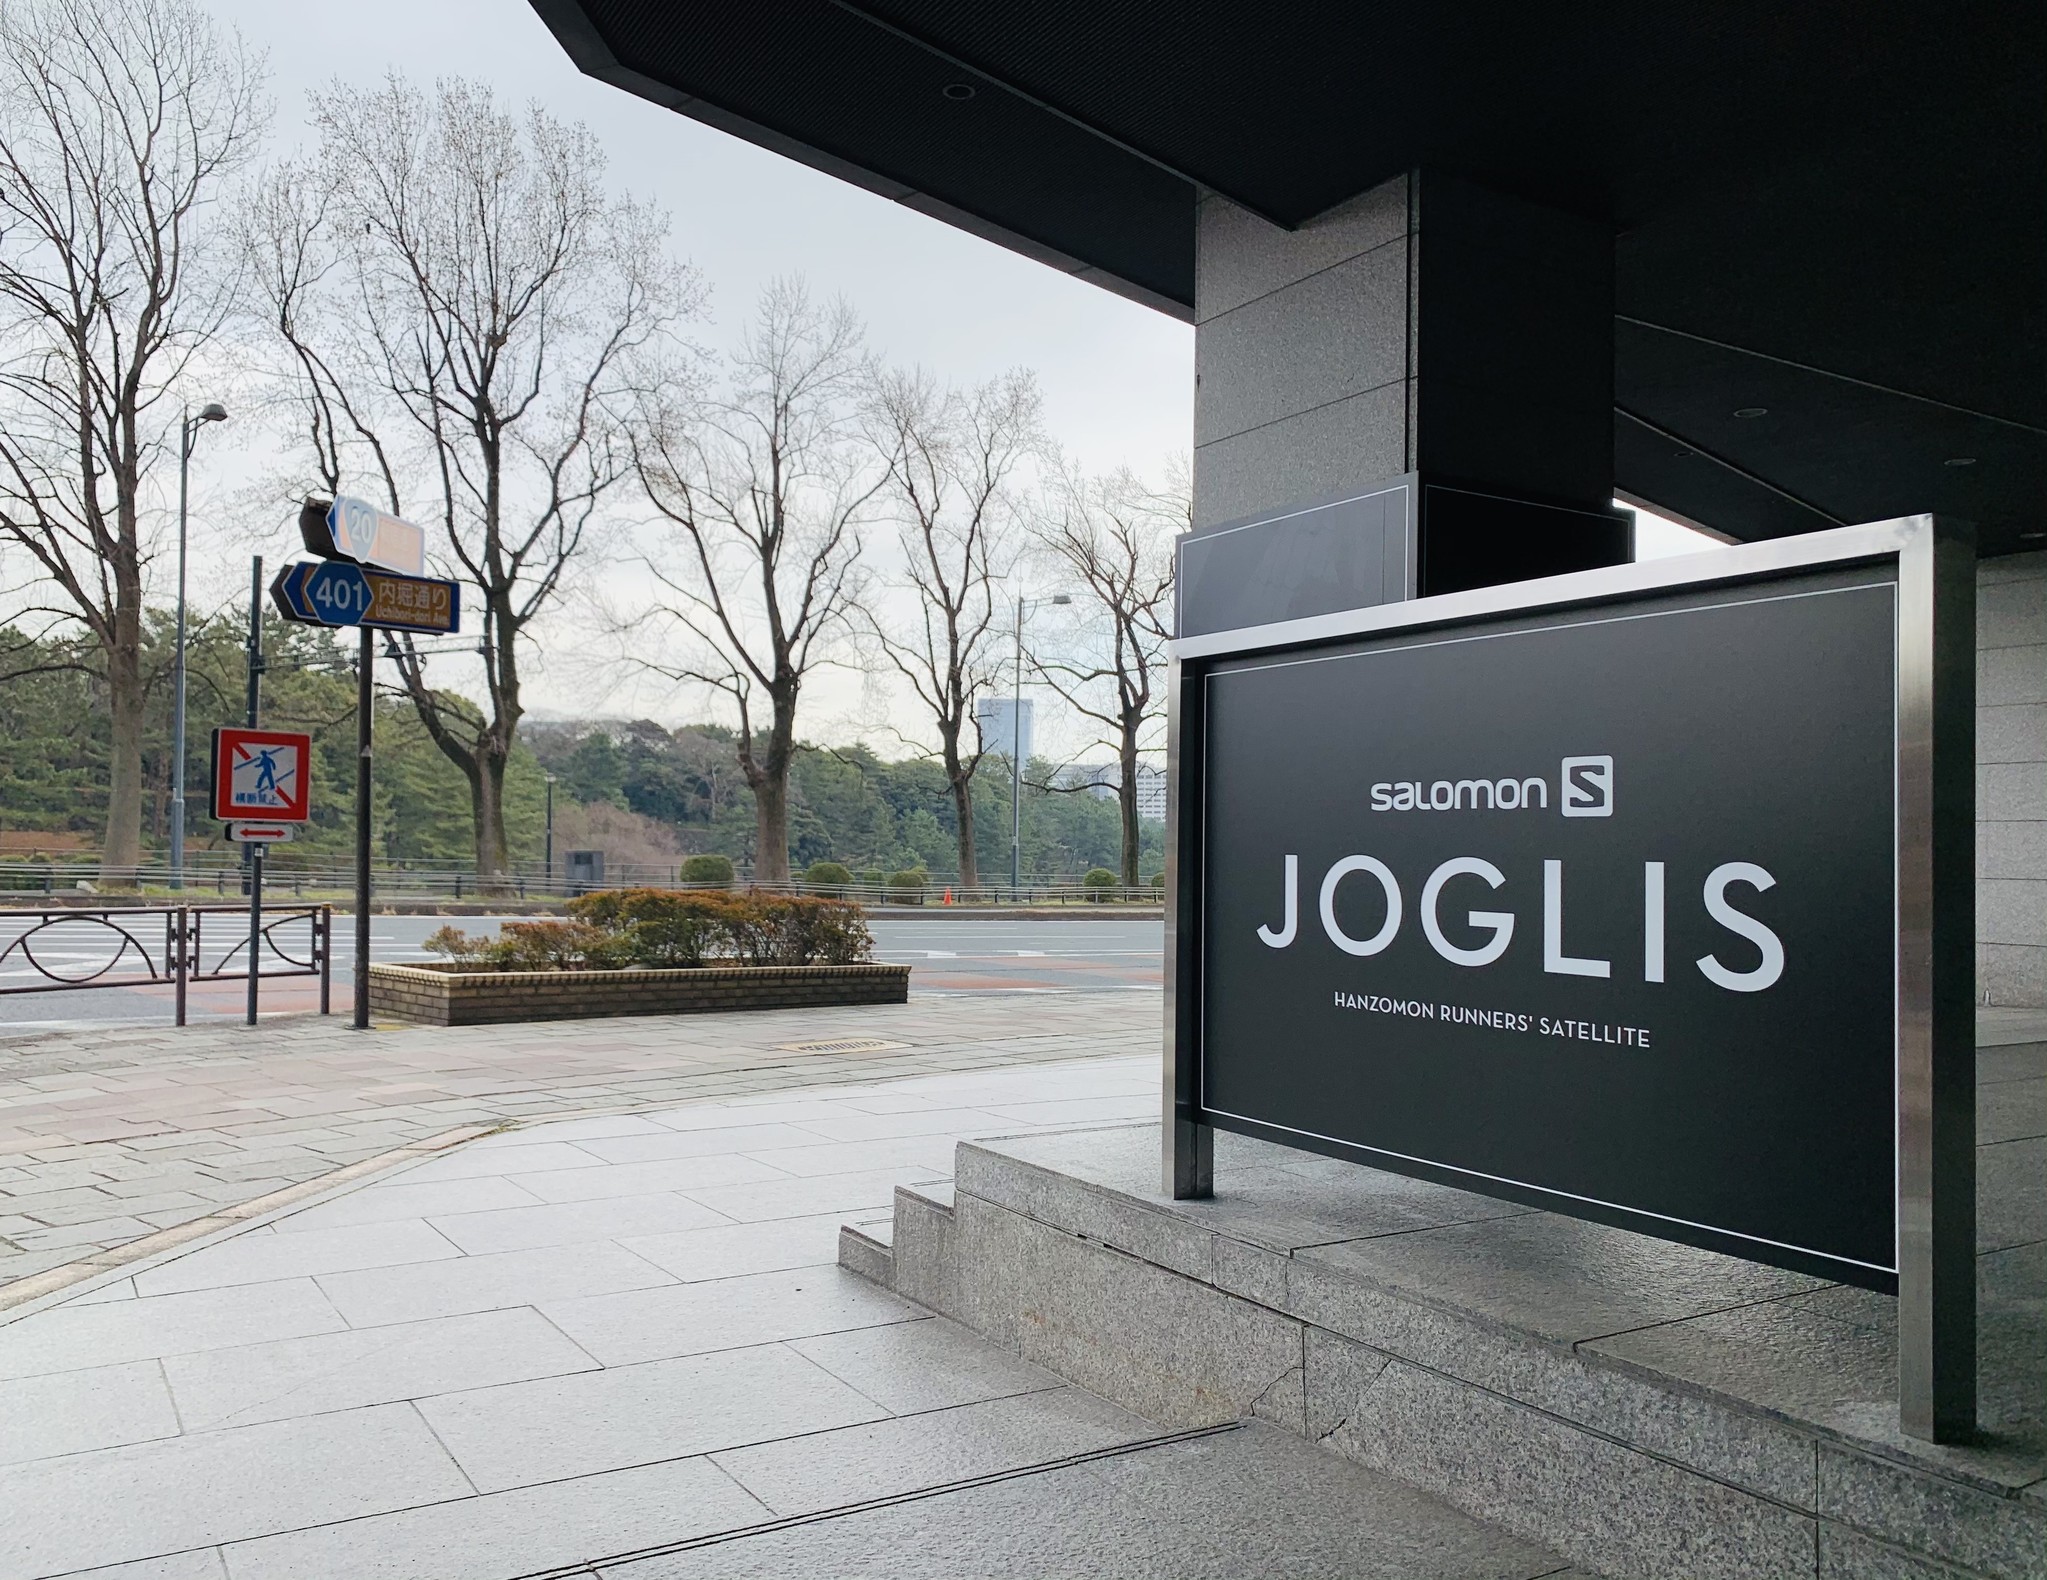 皇居直結のランナー施設 Salomon Joglis プロジェクトスタート アメアスポーツジャパン株式会社のプレスリリース